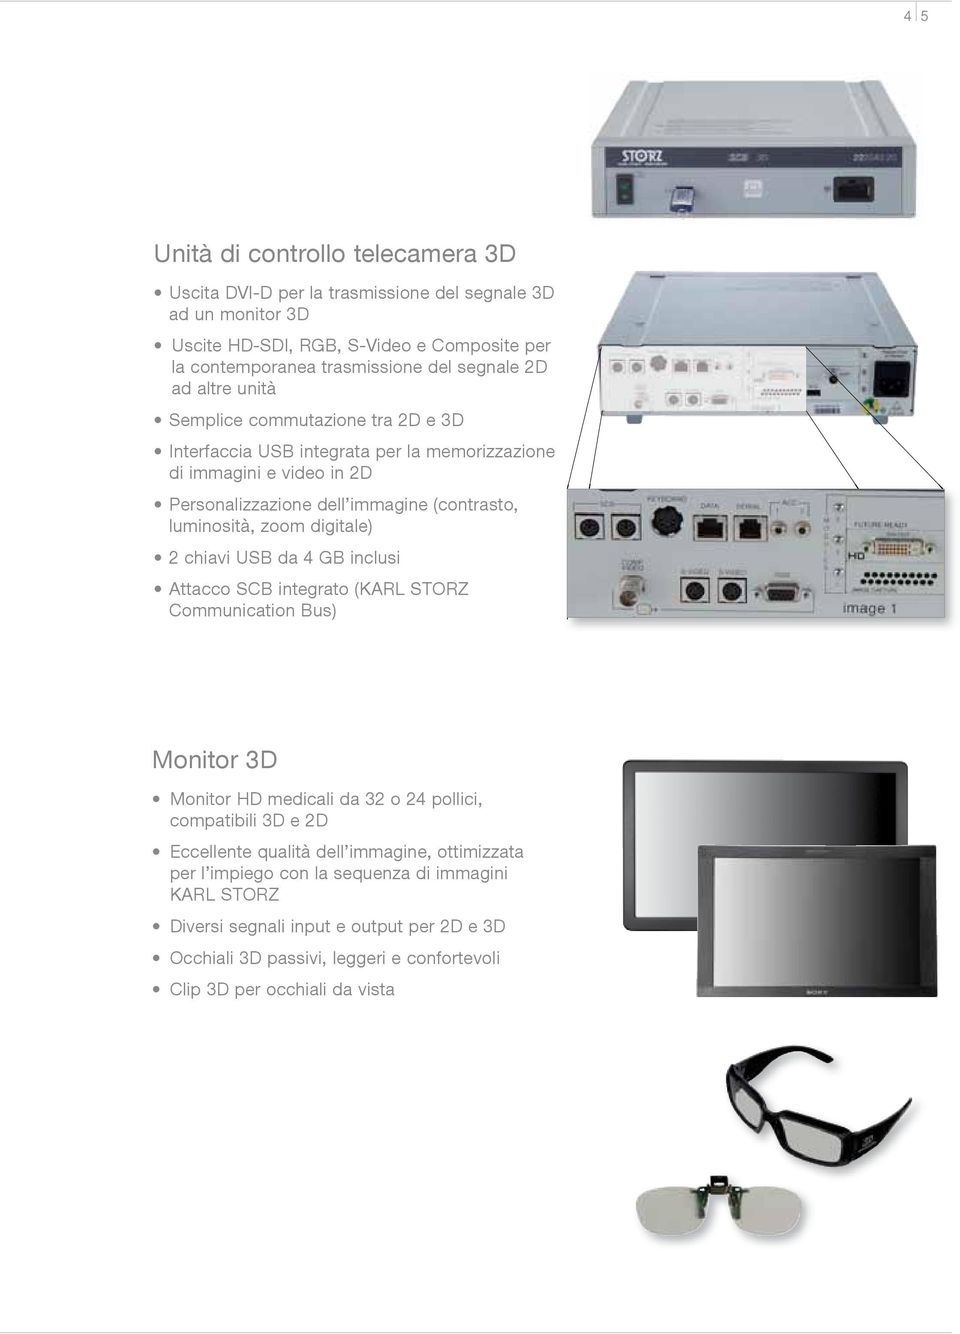 digitale) 2 chiavi USB da 4 GB inclusi Attacco SCB integrato (KARL STORZ Communication Bus) Monitor 3D Monitor HD medicali da 32 o 24 pollici, compatibili 3D e 2D Eccellente qualità dell